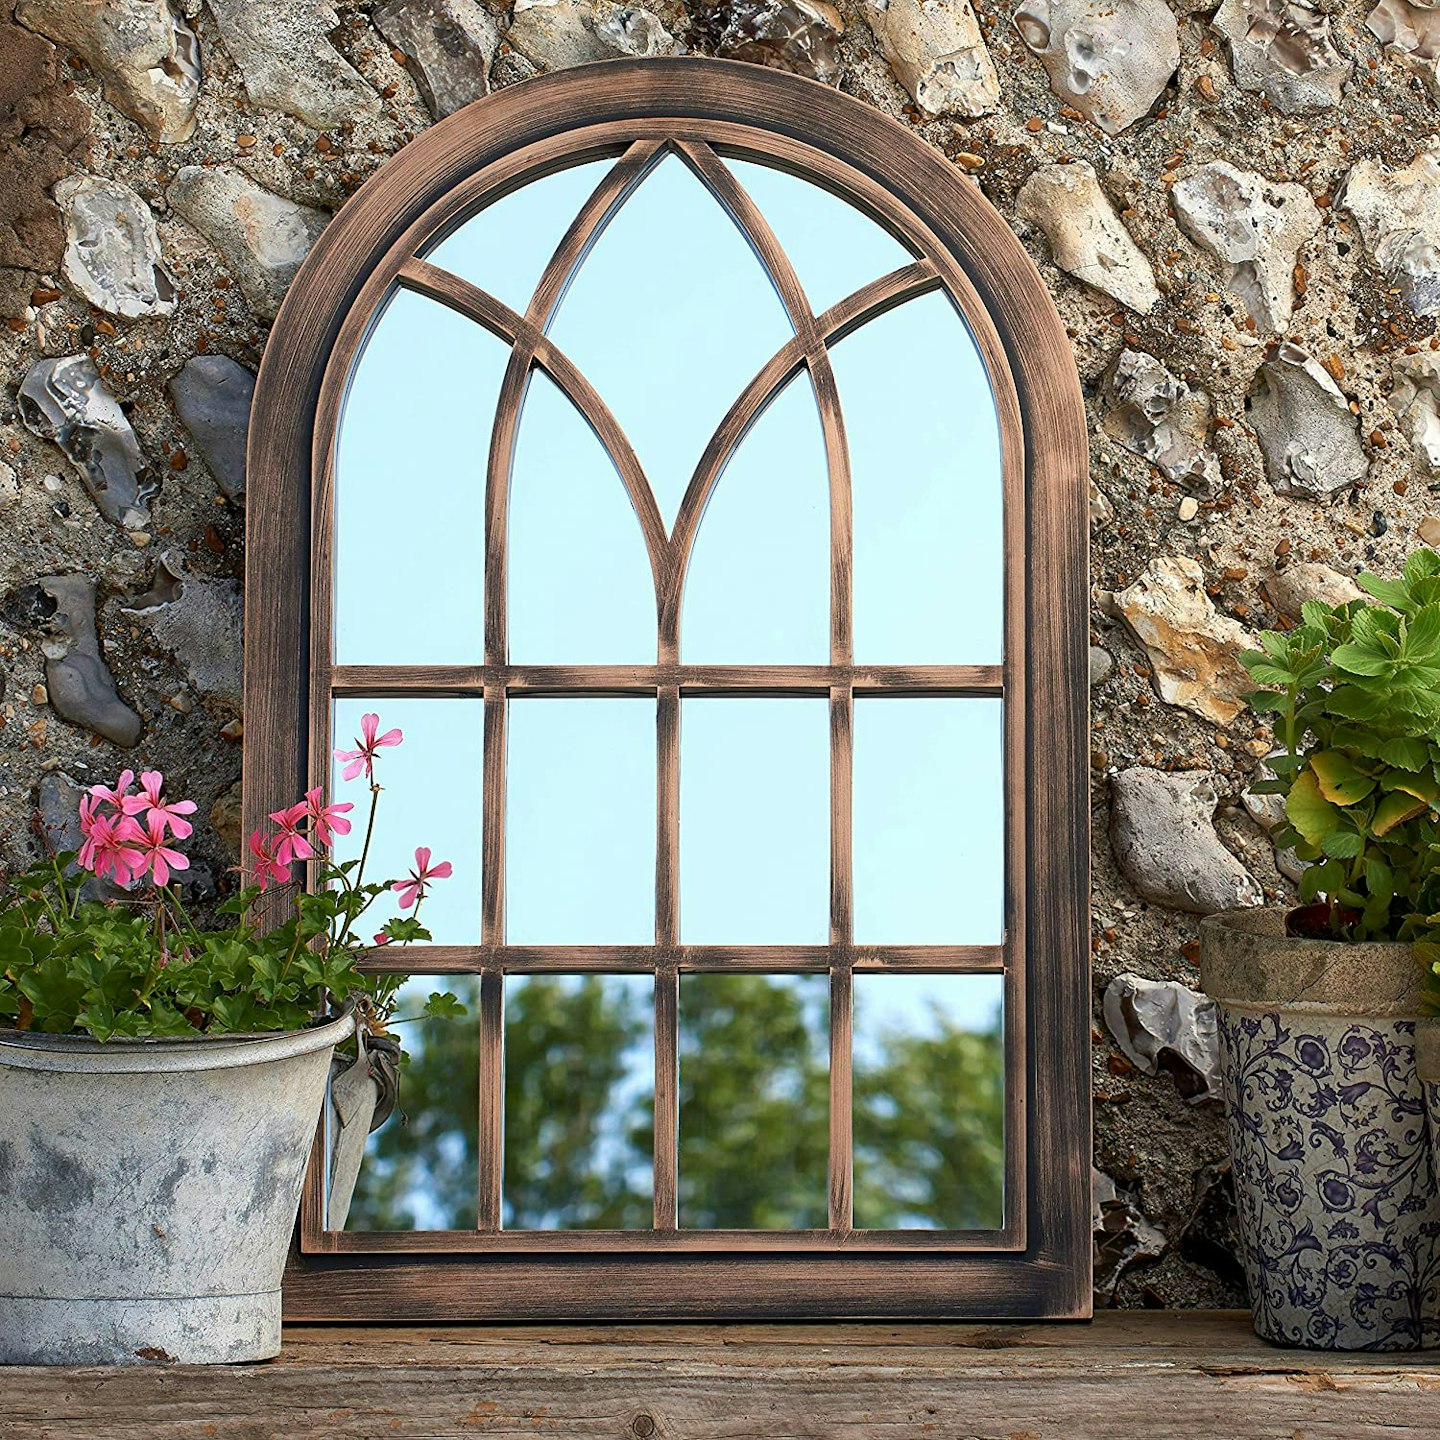 Creekwood Toscana Indoor/Outdoor Lightweight Arched Window Wall Mirror